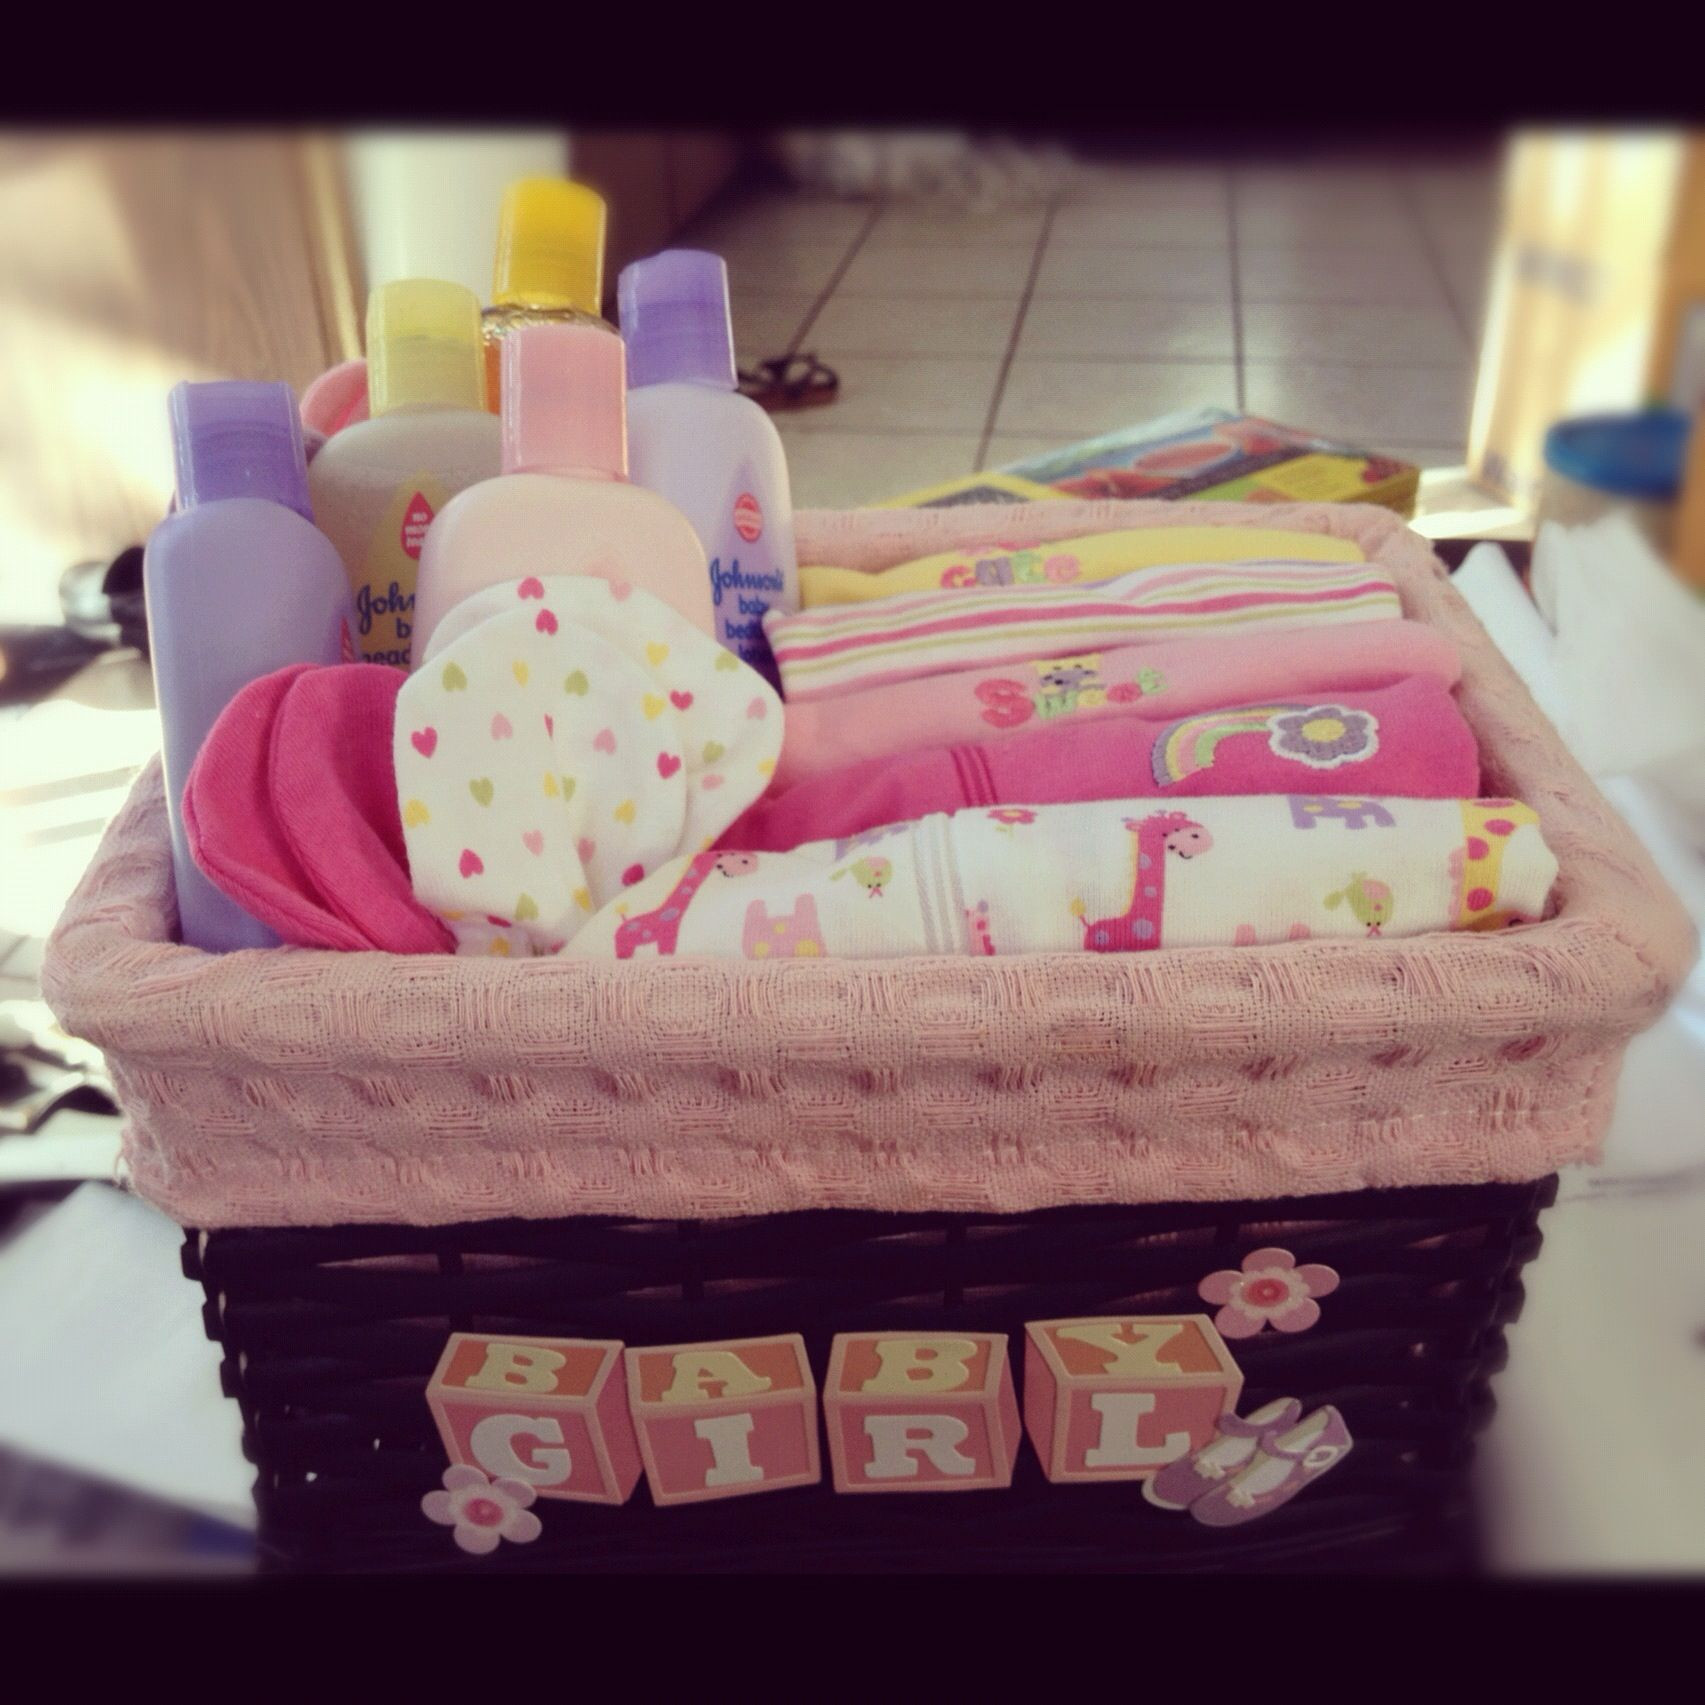 Newborn Baby Gift Baskets Ideas
 Baby shower DIY t basket